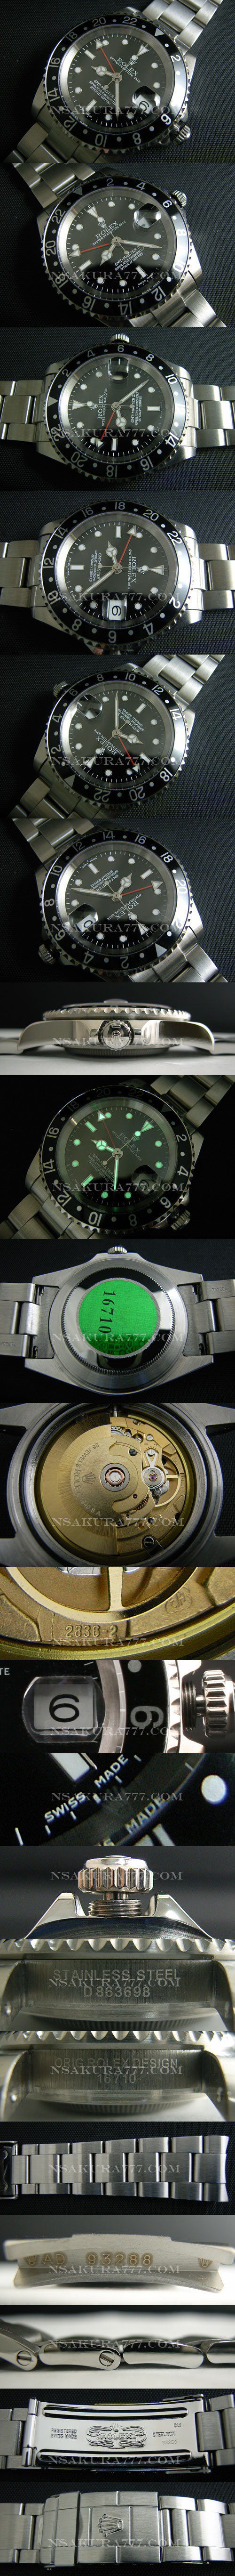 レプリカ時計ロレックス GMT マスター廉価版2836-2ムーブ搭載 GMT針単独調整可能 - ウインドウを閉じる